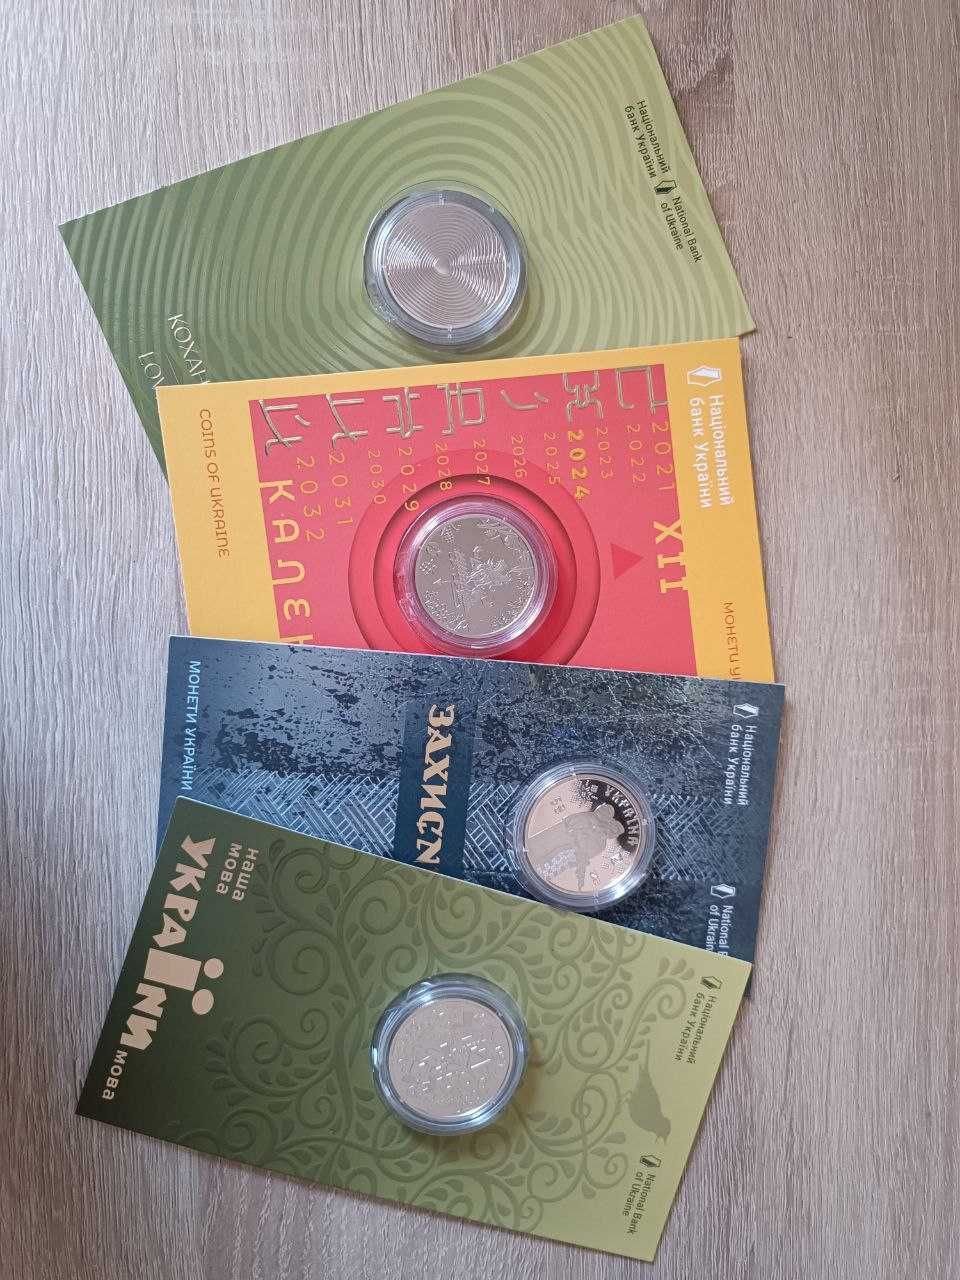 Пам'ятна монета "Українська мова" у сувенірній упаковці